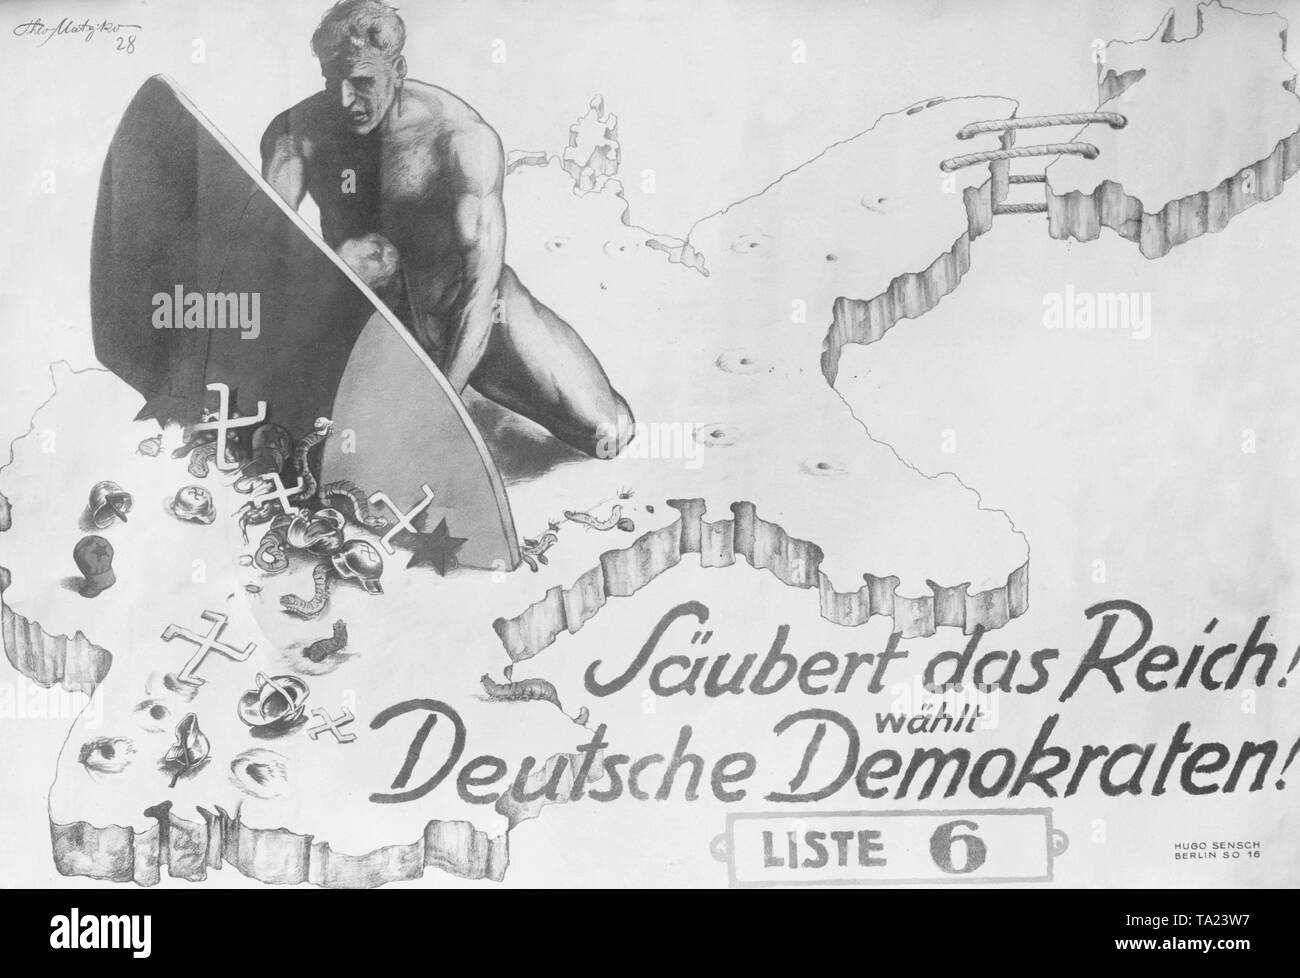 Wahlplakat der Deutschen Demokratischen Partei (DDP) für den Reichstag die Wahl in Berlin, 1928. Die Beschwerde sagt: "Klar, das Reich! Stimmen Sie für den deutschen Demokraten! Liste 6'. In der Poster, ein muskulöser Mann zieht sich eine Reihe von Hakenkreuzen, rote Sterne und Würmer mit stahlhelme aus?? das Deutsche Reich. Stockfoto